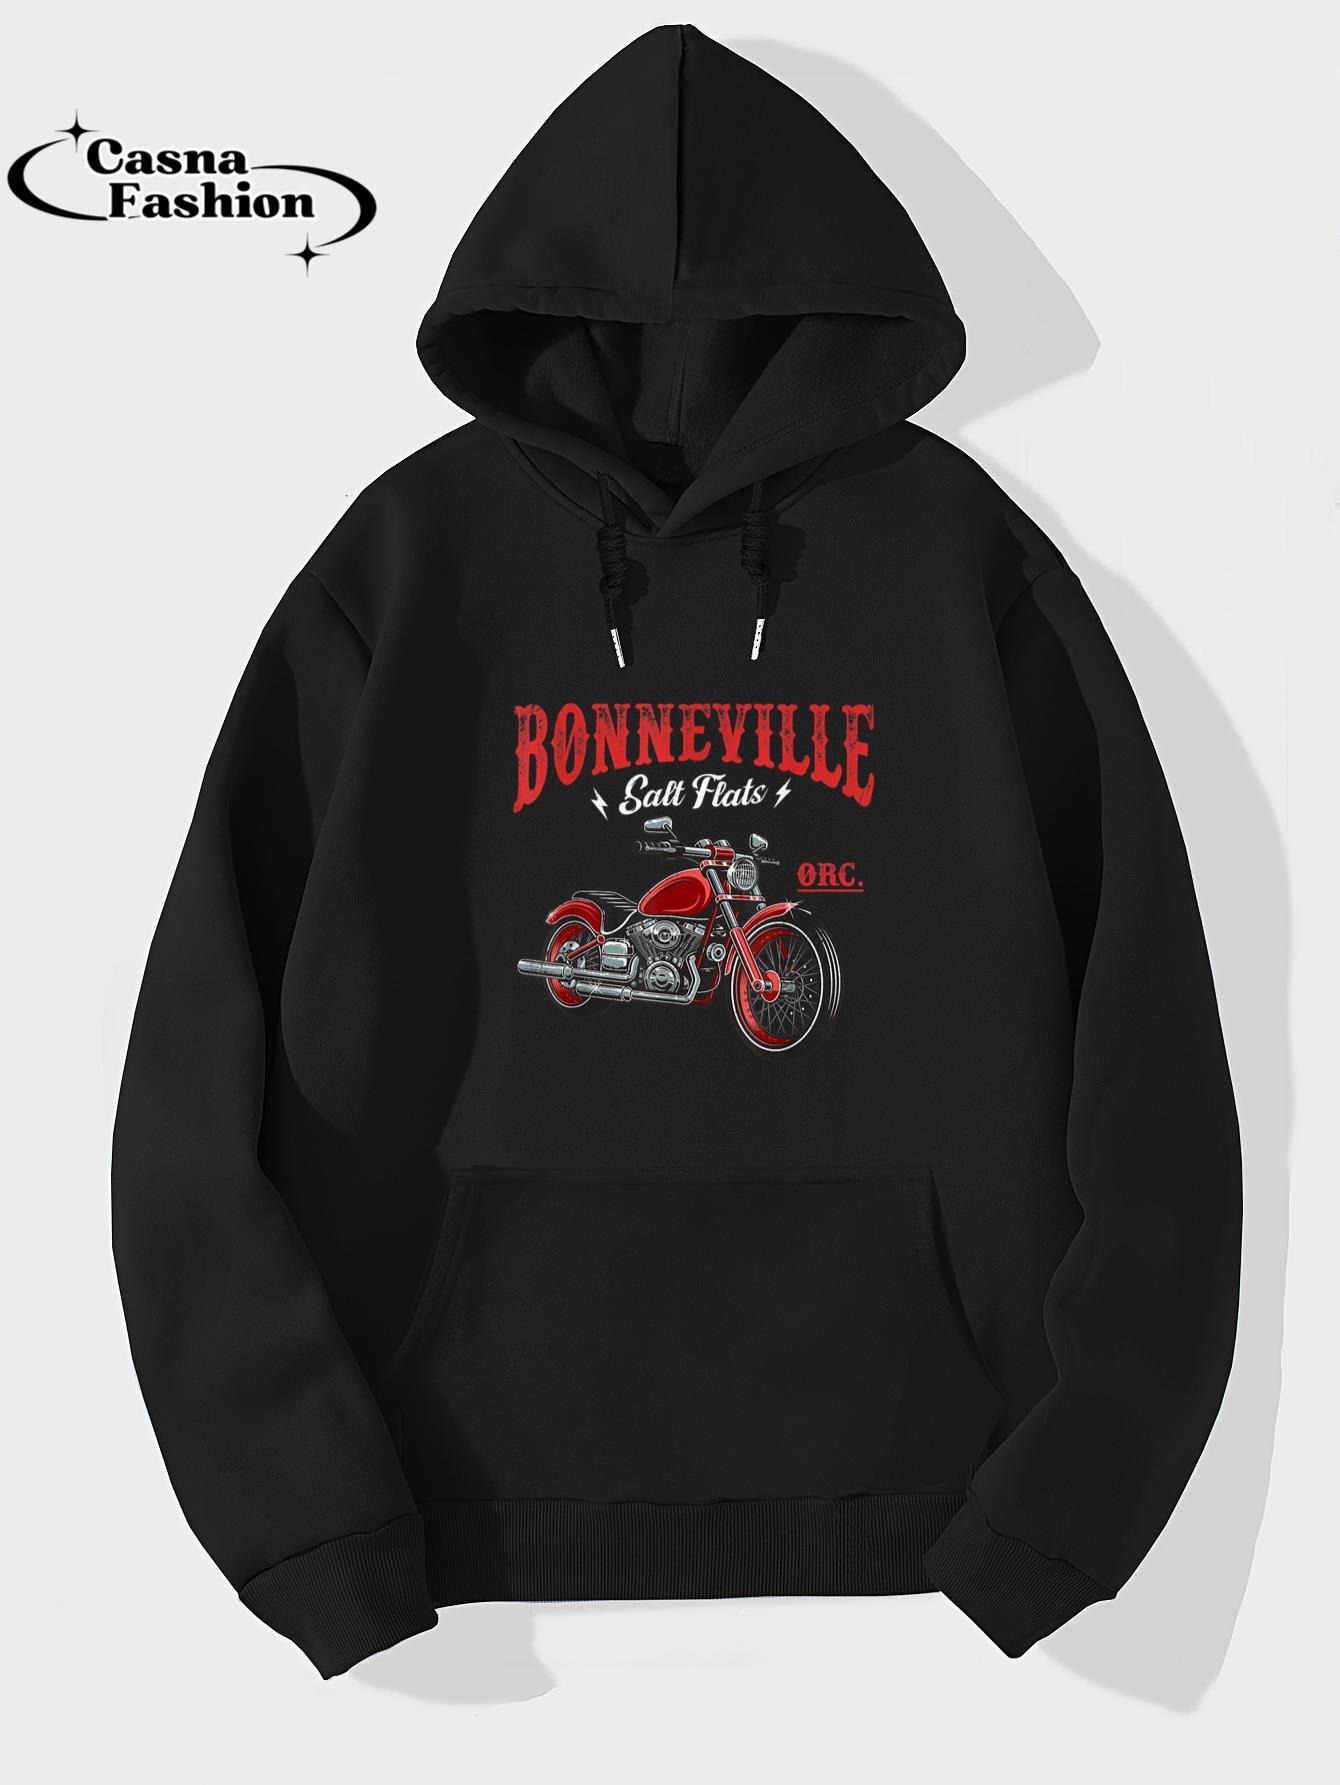 casnafashion_Hoodie_Vintage Motorcycle Racing Bonneville Salt Flats Biker Lover T-Shirt_hoodie_black hoodie